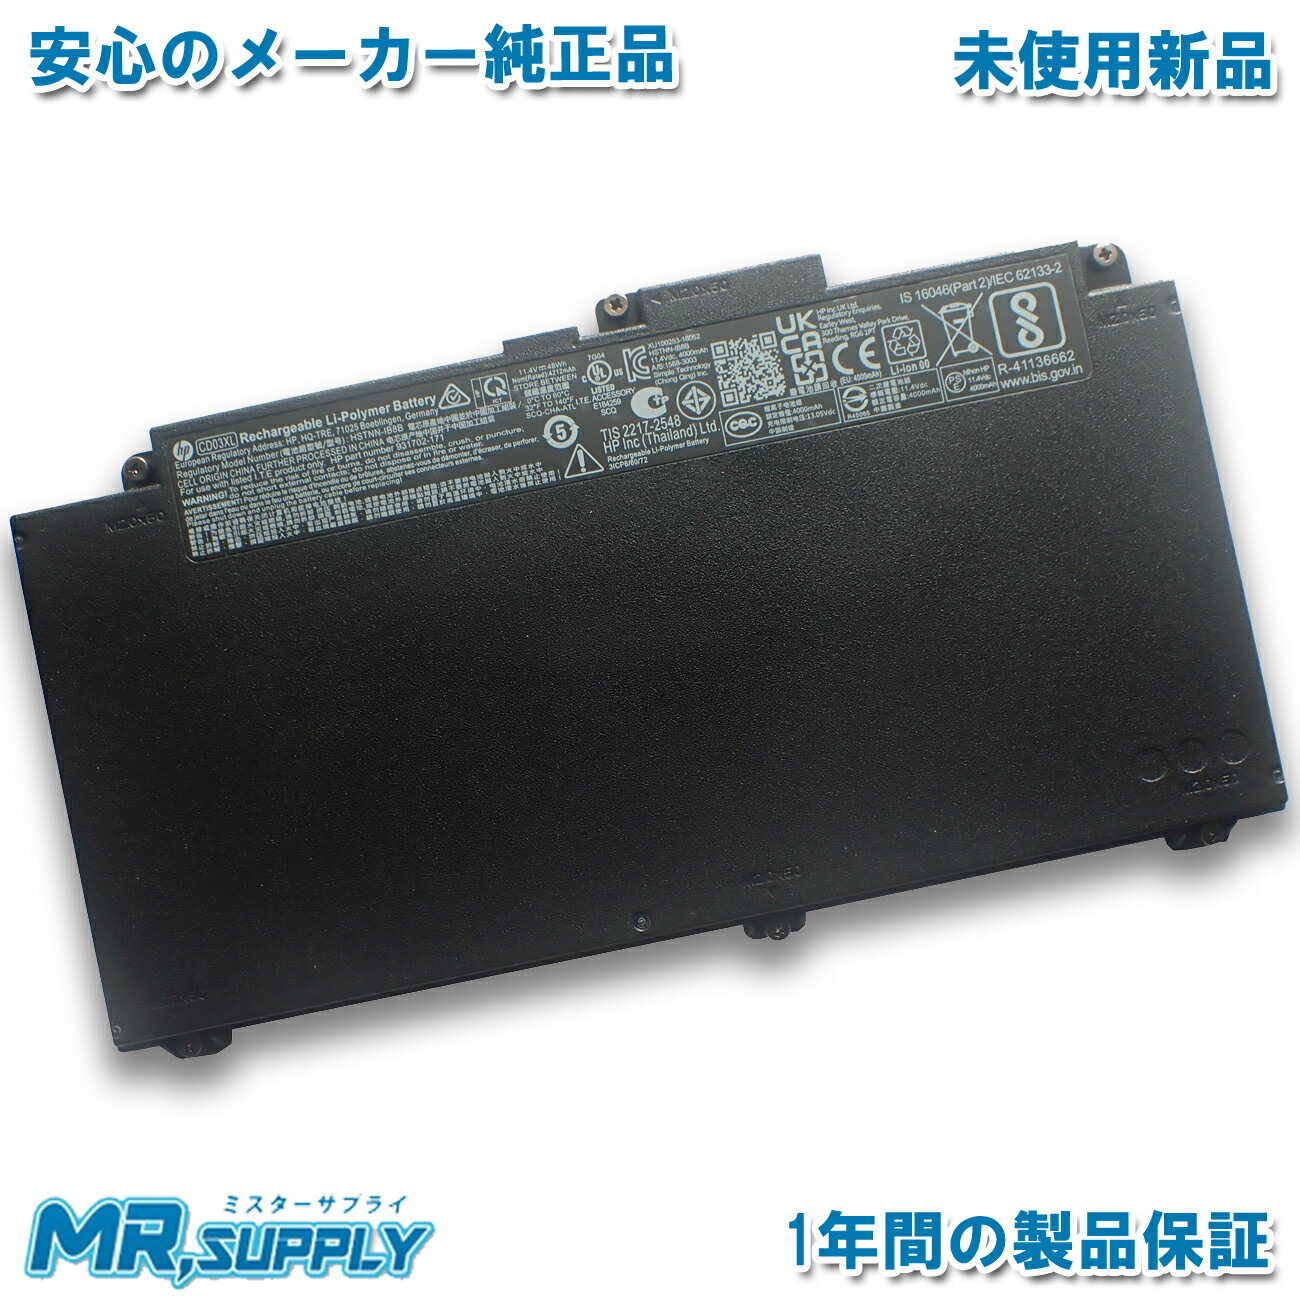 【純正】Eraser n40-45 14.4V 41Wh lenovo ノート PC ノートパソコン 純正 交換バッテリー